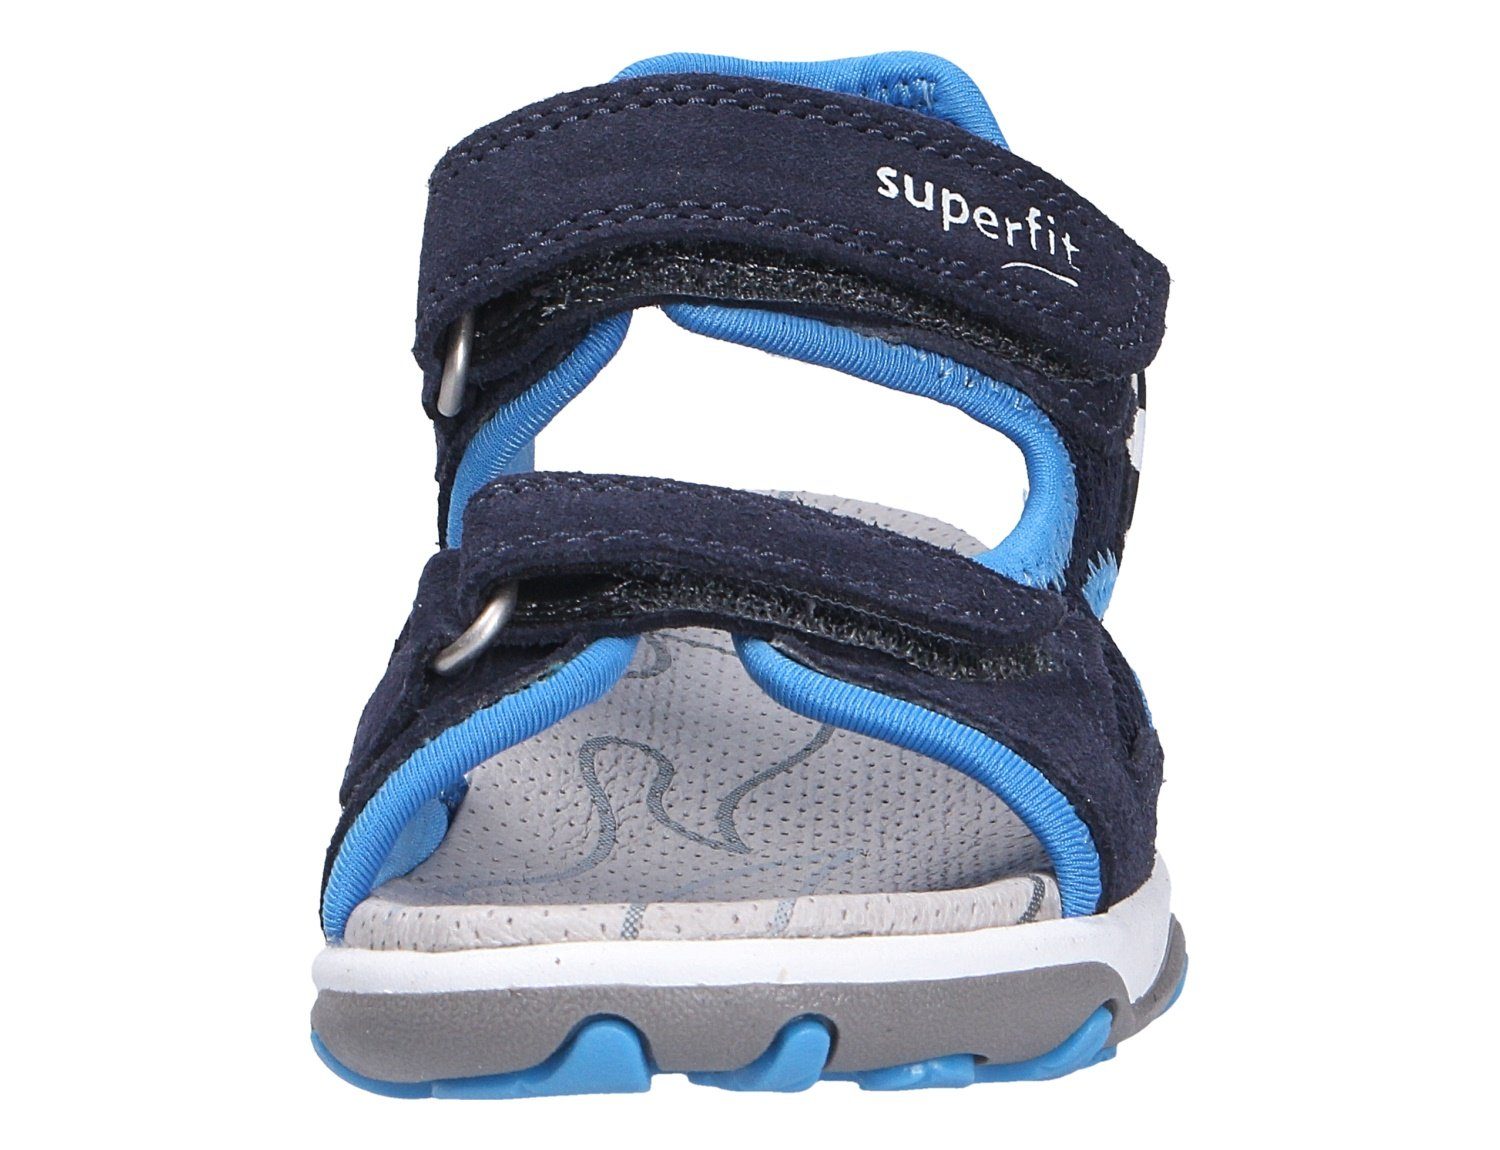 Superfit Sandale Robuste Qualität BLAU/TÜRKIS (20401812)